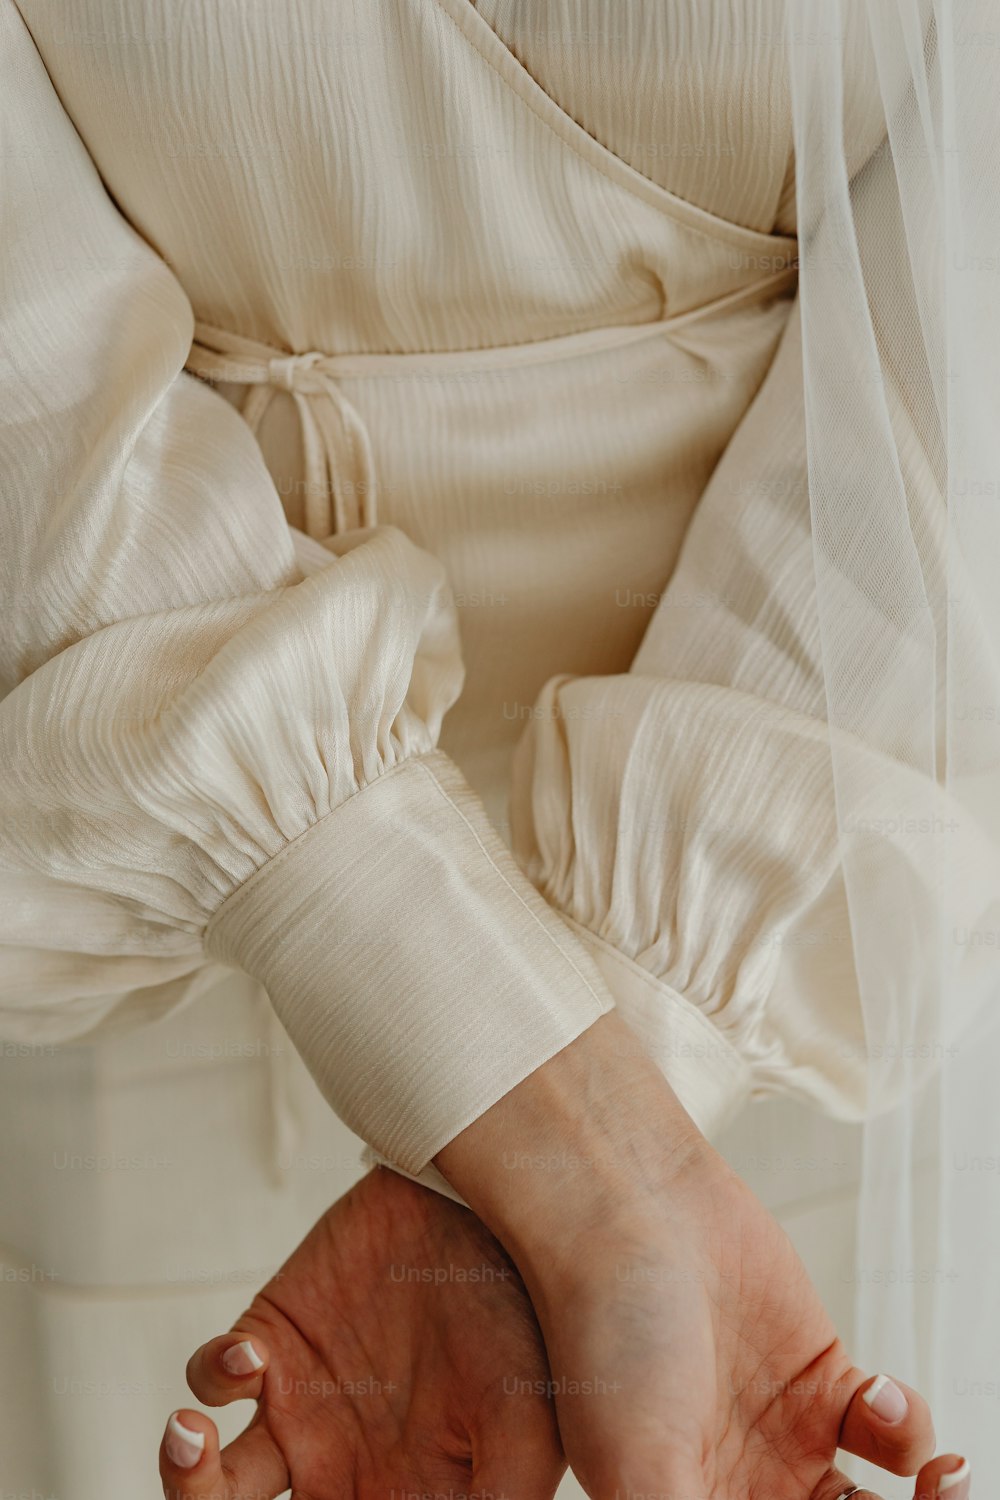 Una mujer con un vestido blanco sosteniendo sus manos juntas